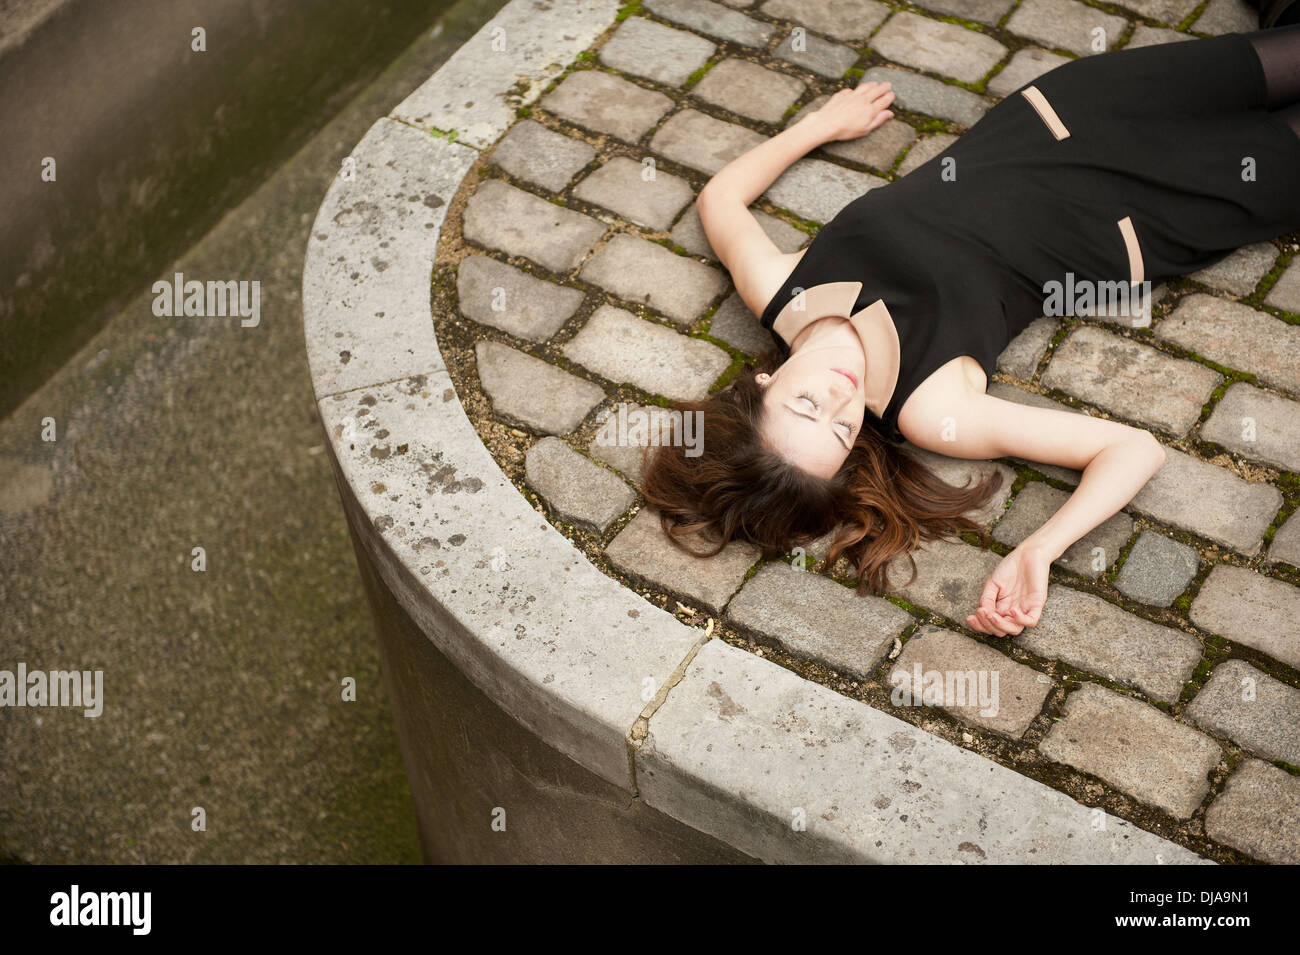 Vista in elevazione di una donna che indossa un abito nero e disteso (morto?) su una strada basolata. Foto Stock